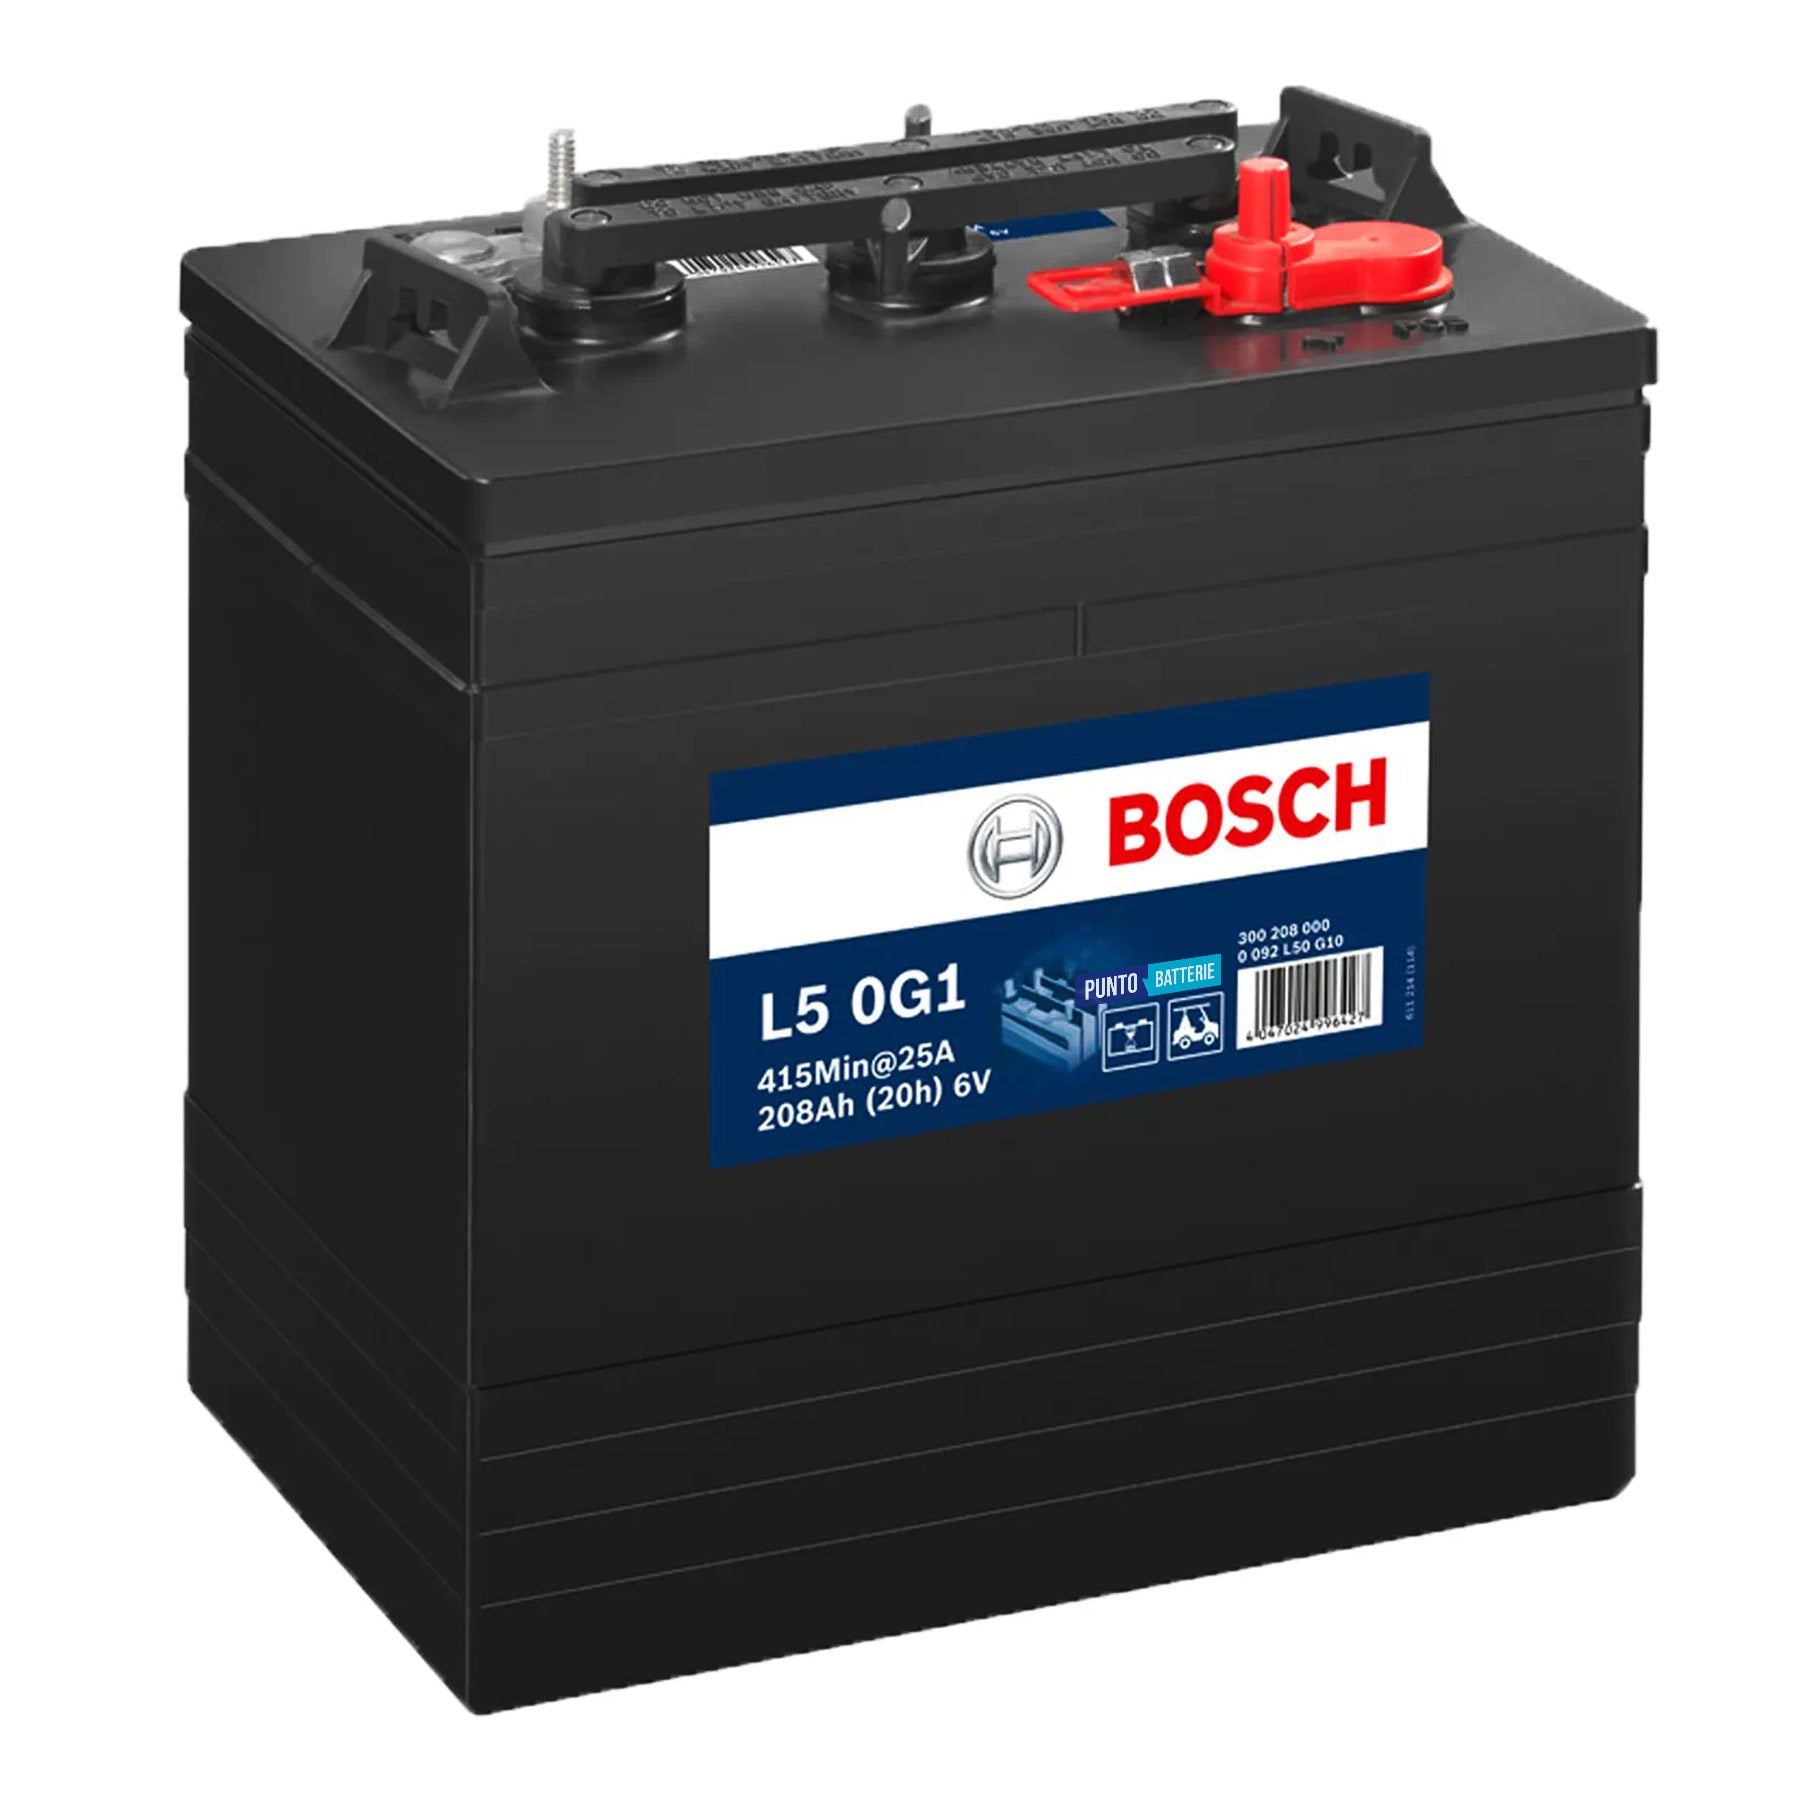 Batteria originale Bosch L5G L5 0G1, dimensioni 261 x 181 x 283, 6 volt, 208 amperora. Batteria per servizi di camper, barca e applicazioni a scarica lenta.